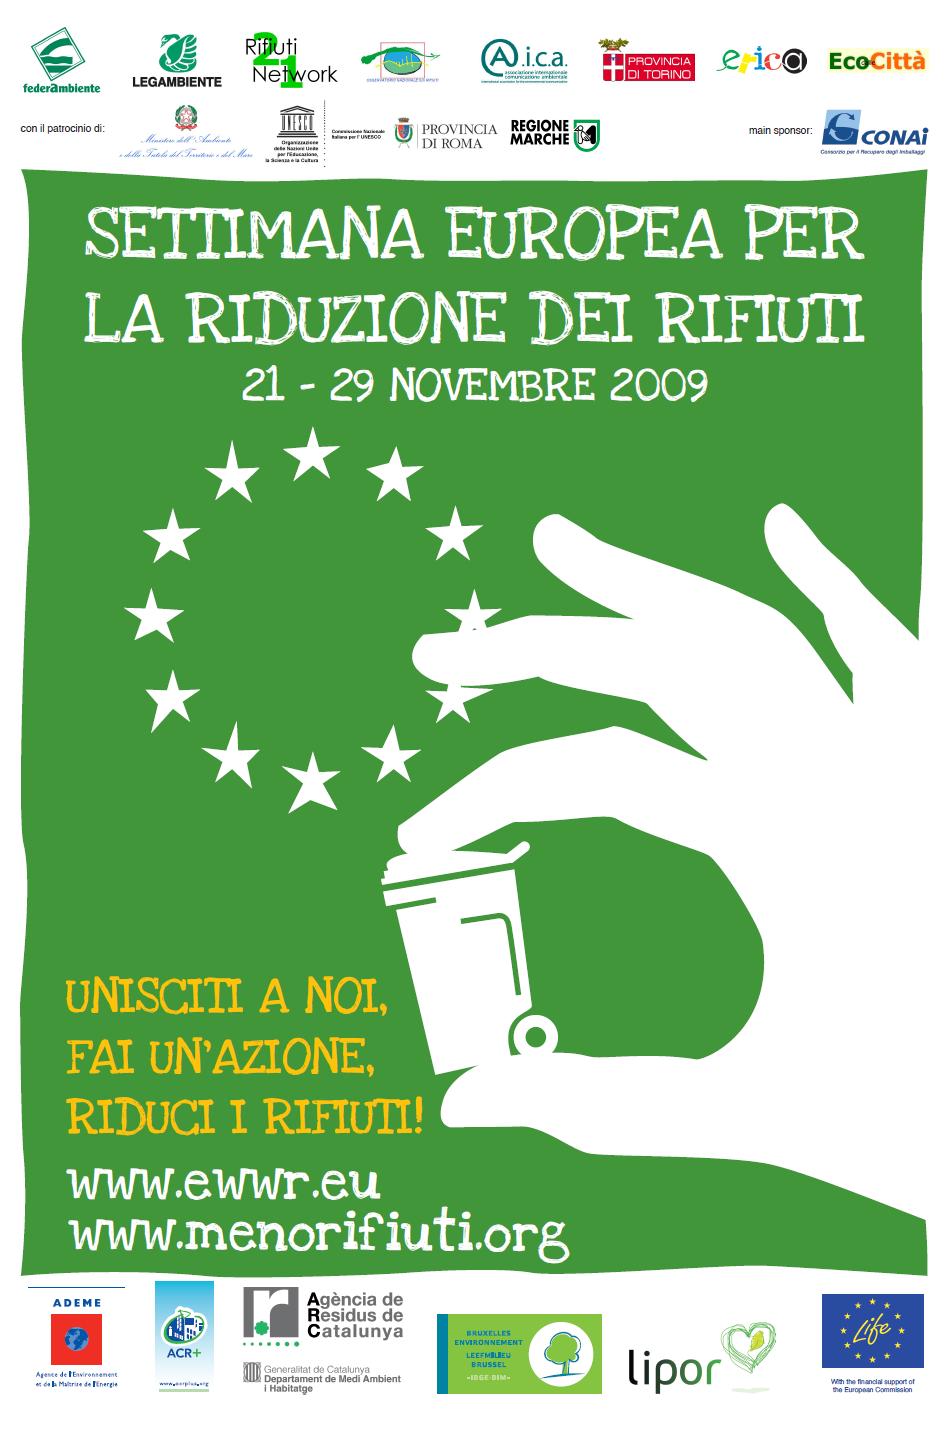 Attività realizzate Novembre 2009 in collaborazione con Osservatorio Nazionale Rifiuti, Provincia di Torino, Rifiuti 21 Network, Federambiente, Commissione nazionale italiana Unesco, AICA